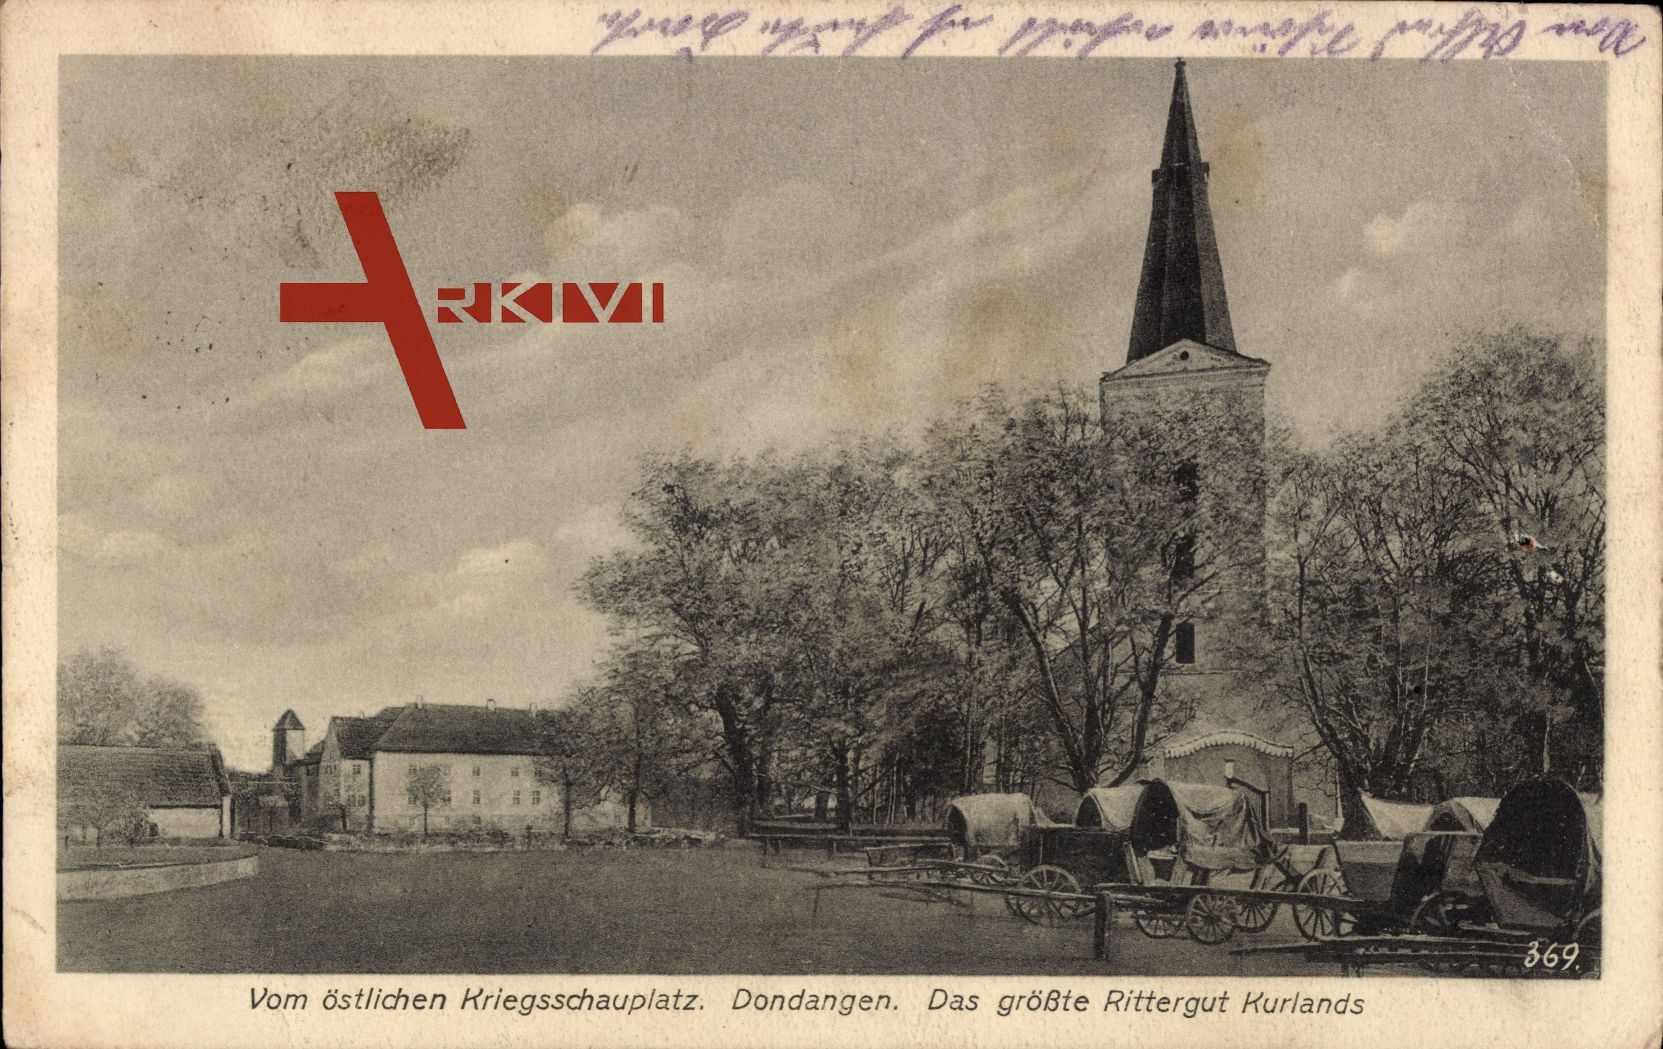 Dondangen Kurland Lettland, Rittergut, Turm, Planwagen